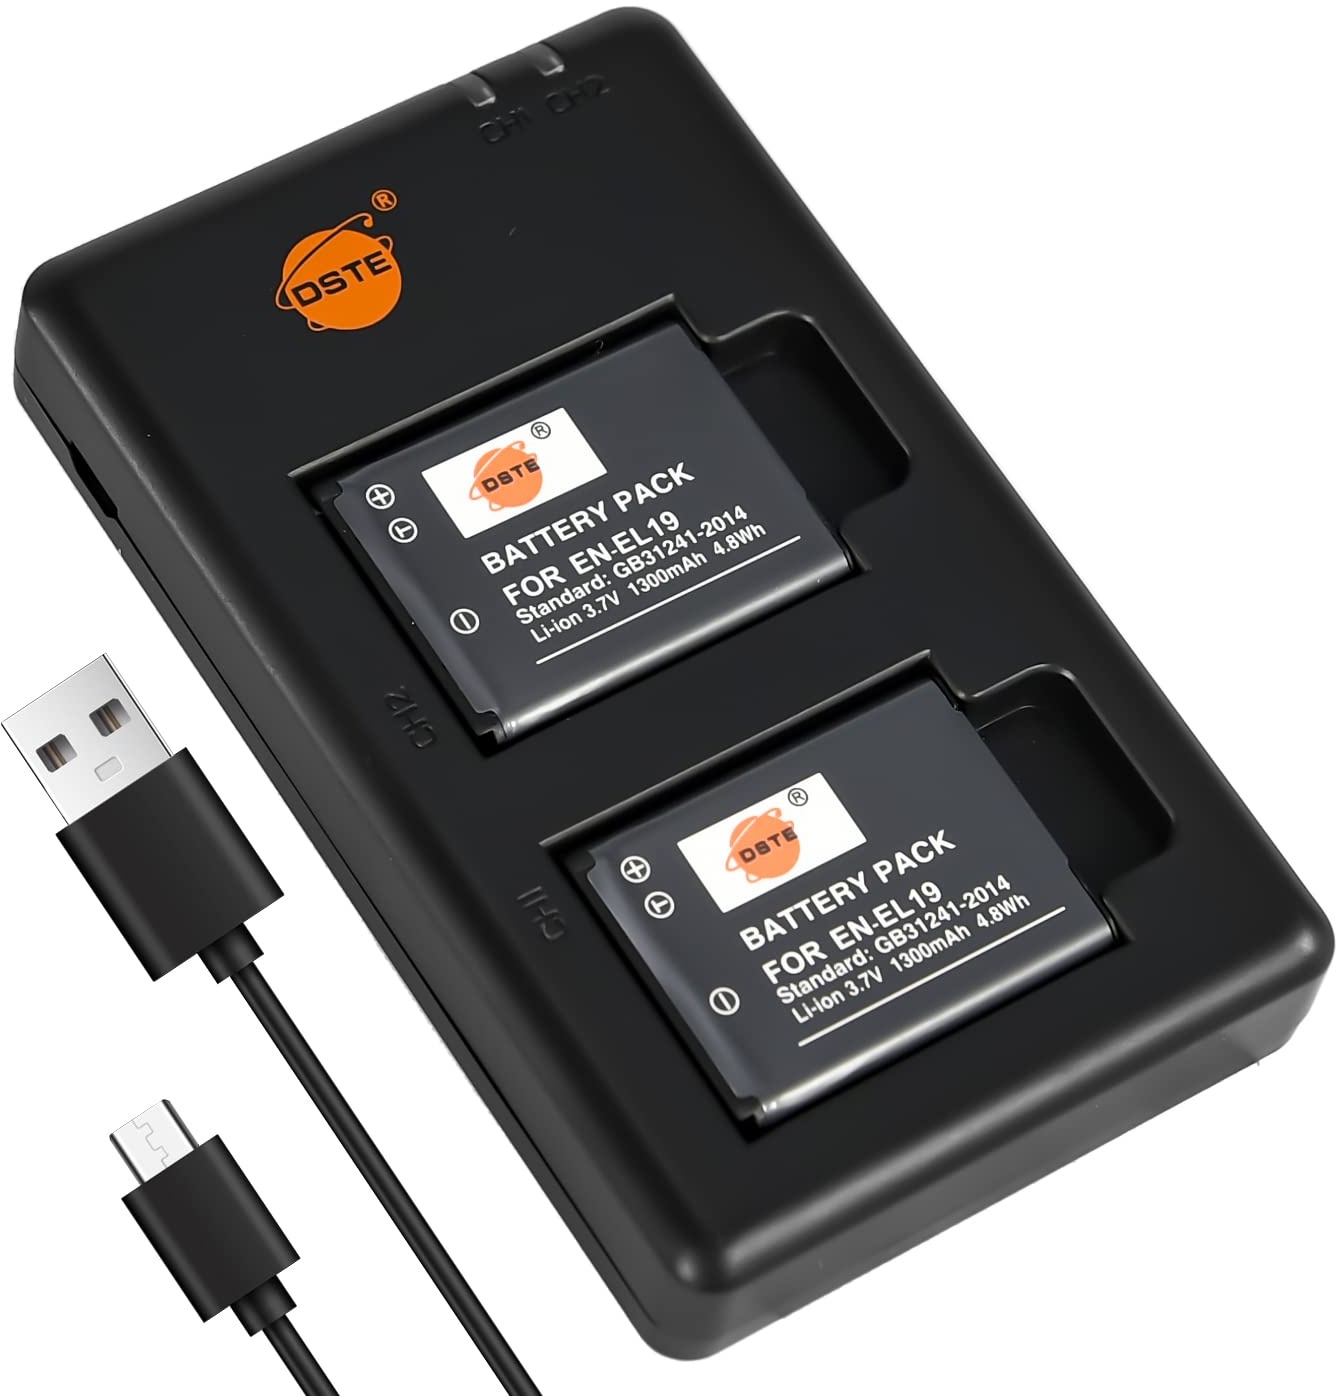 DSTE 2PCS EN-EL19(1300mAh/3.7V) Batterie Ladegerät Compatible für Nikon Coolpix S100,S2500,S2600,S2700,S2750,S3100,S3400,S3500,S4100,S4150,S5200,S6400,S6500,S6600 Digital Kamera